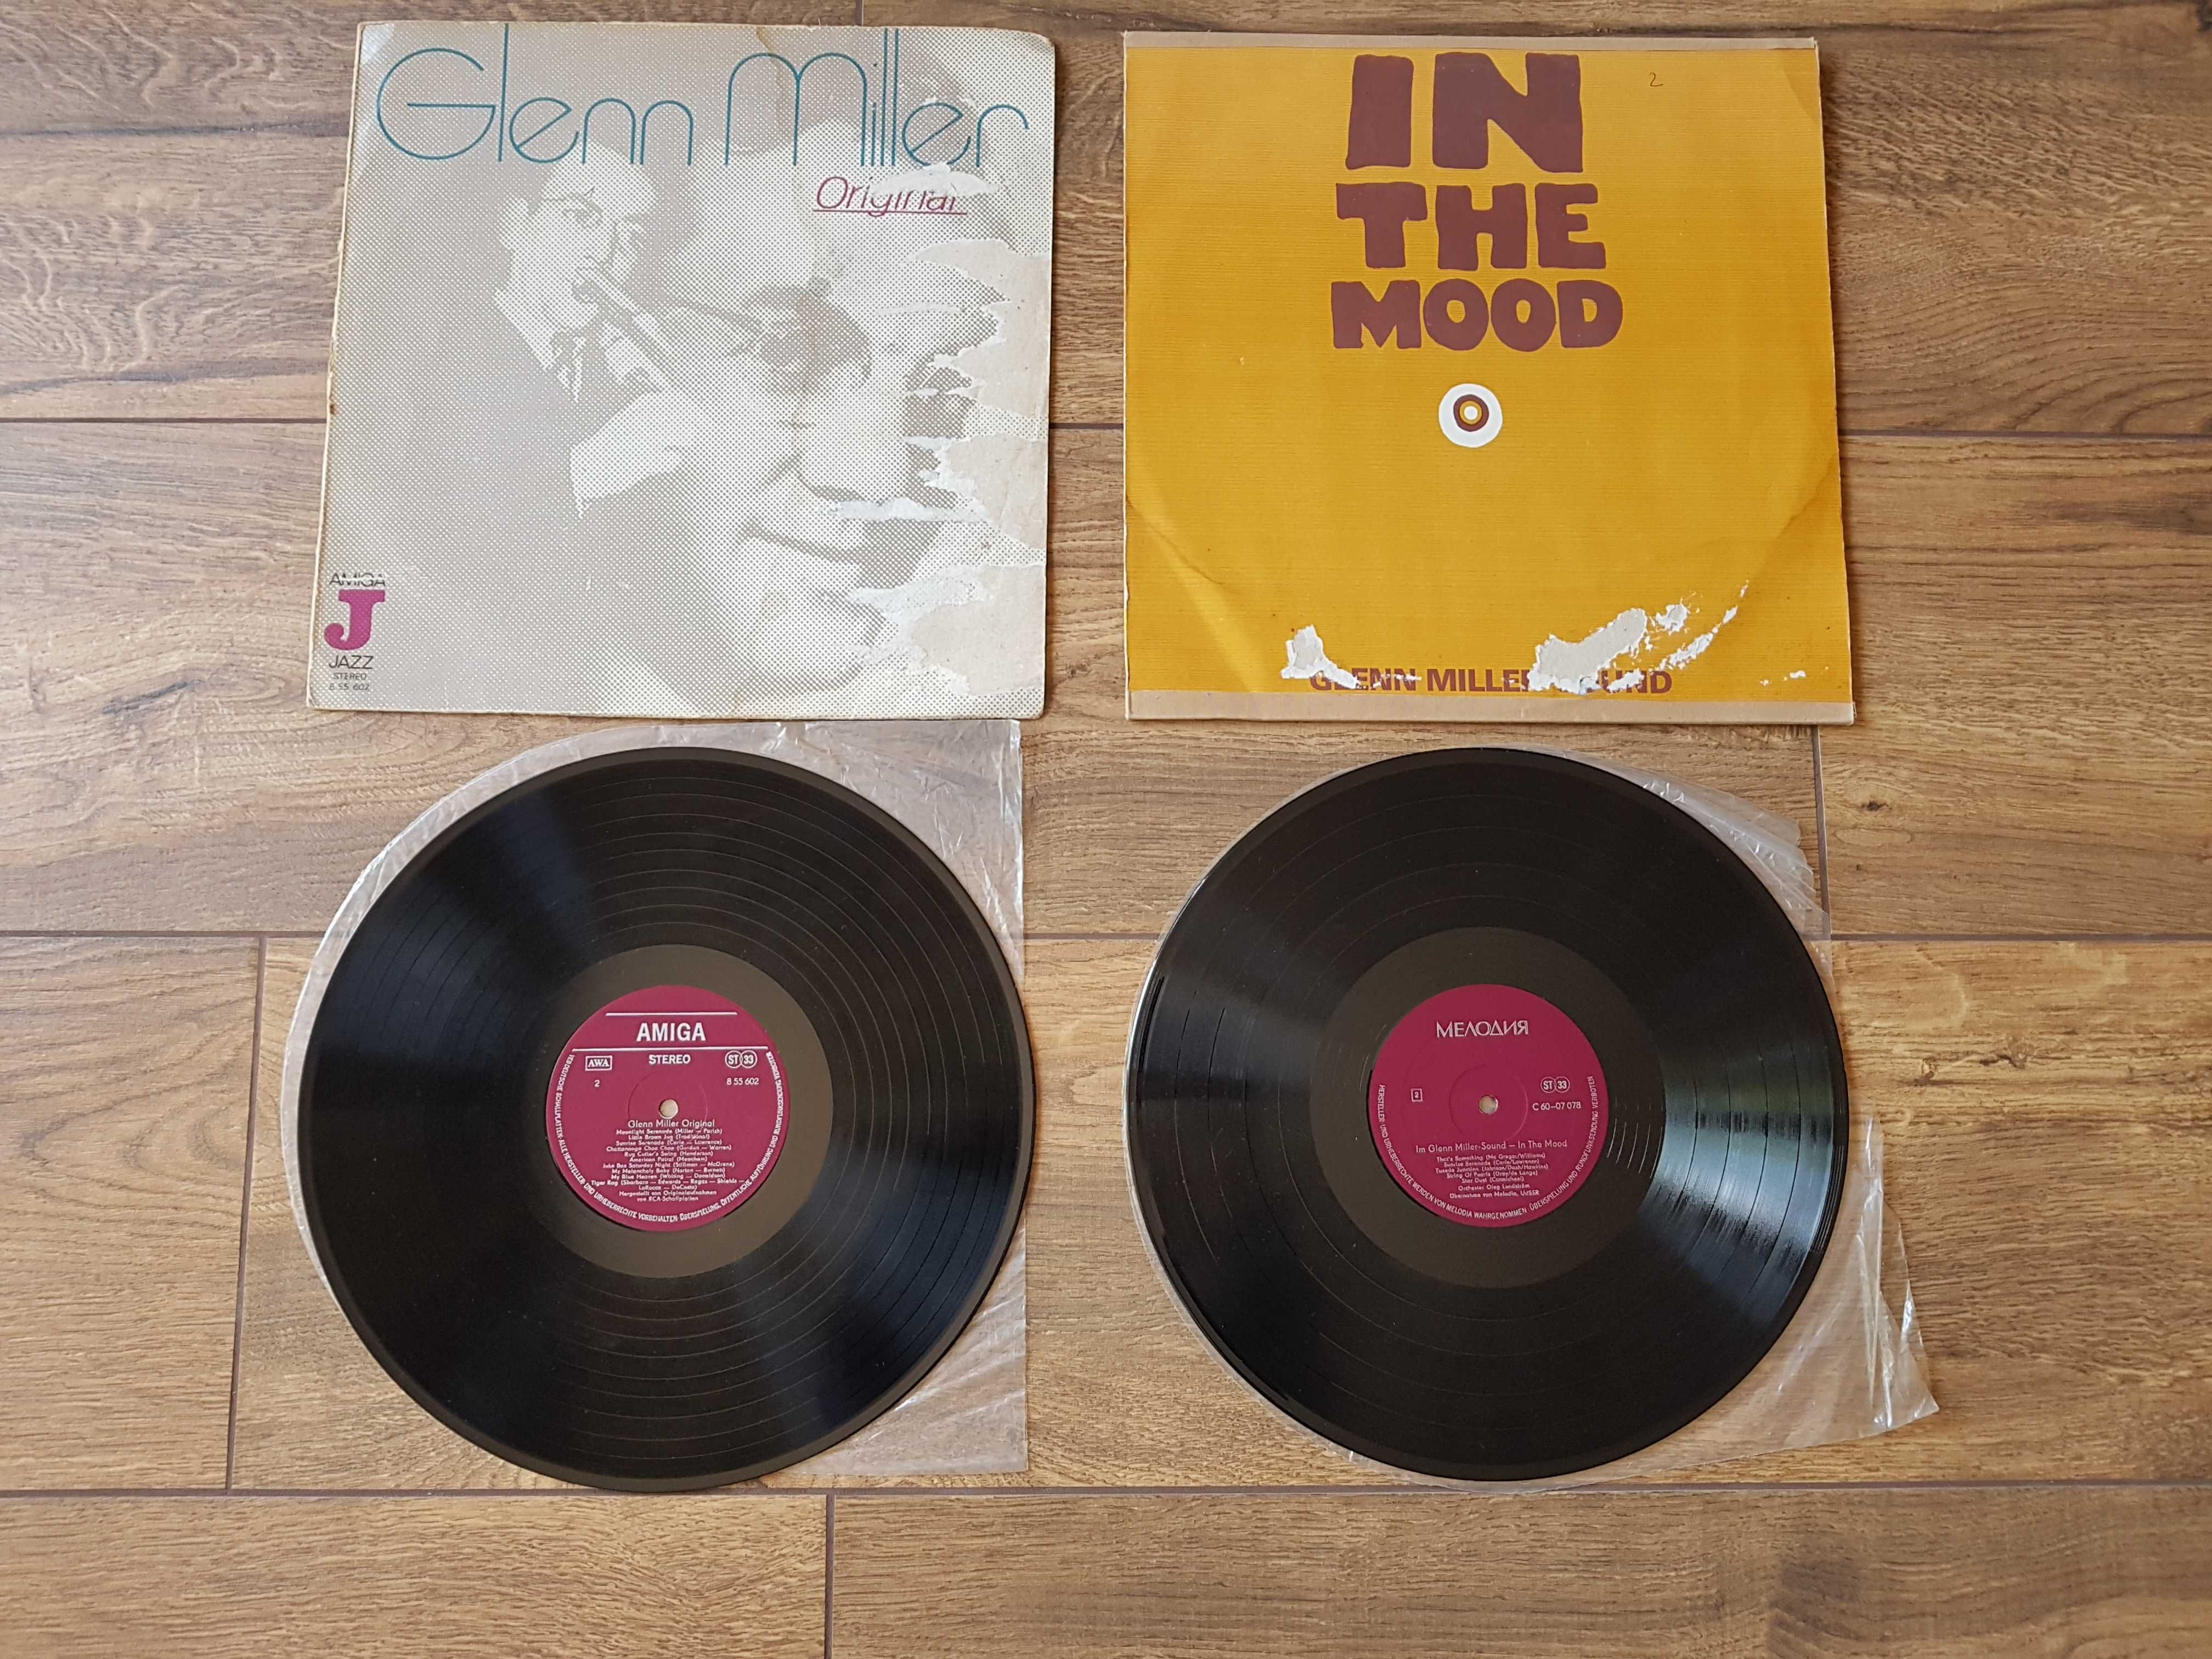 płyty winylowe LP: Glenn MILLER "In the mood", Ella Fitzgerald